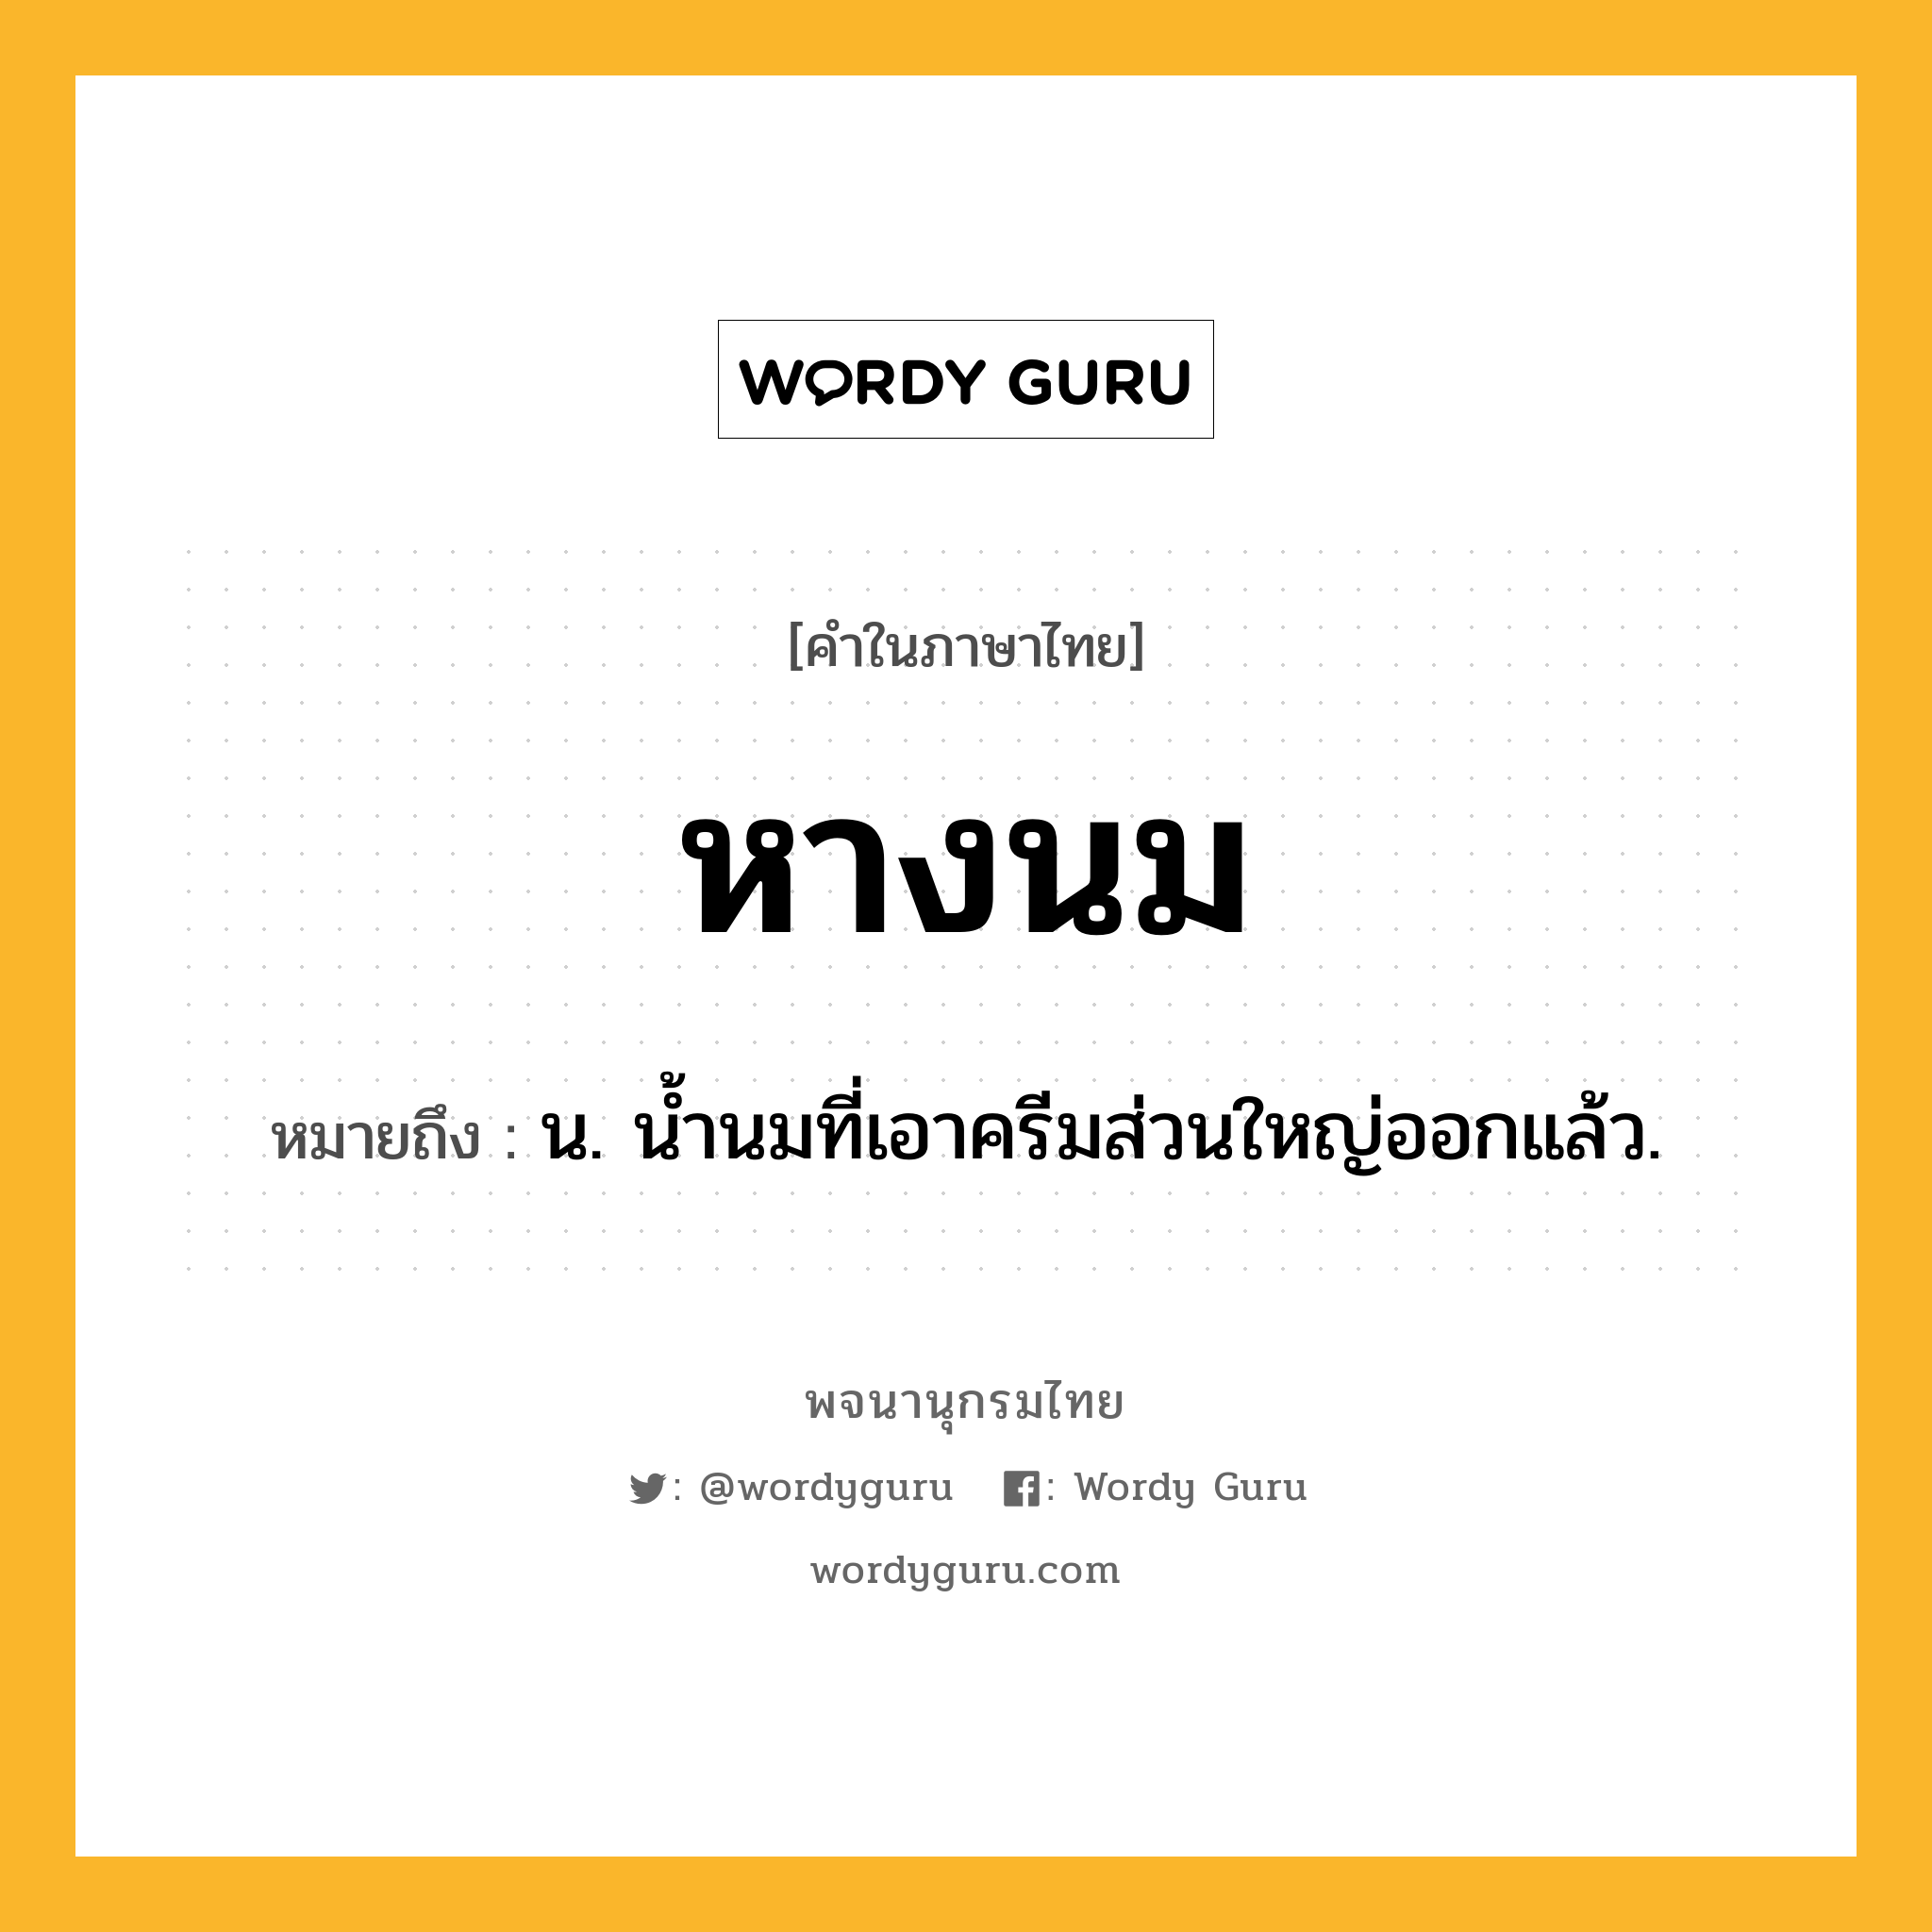 หางนม ความหมาย หมายถึงอะไร?, คำในภาษาไทย หางนม หมายถึง น. น้ำนมที่เอาครีมส่วนใหญ่ออกแล้ว.